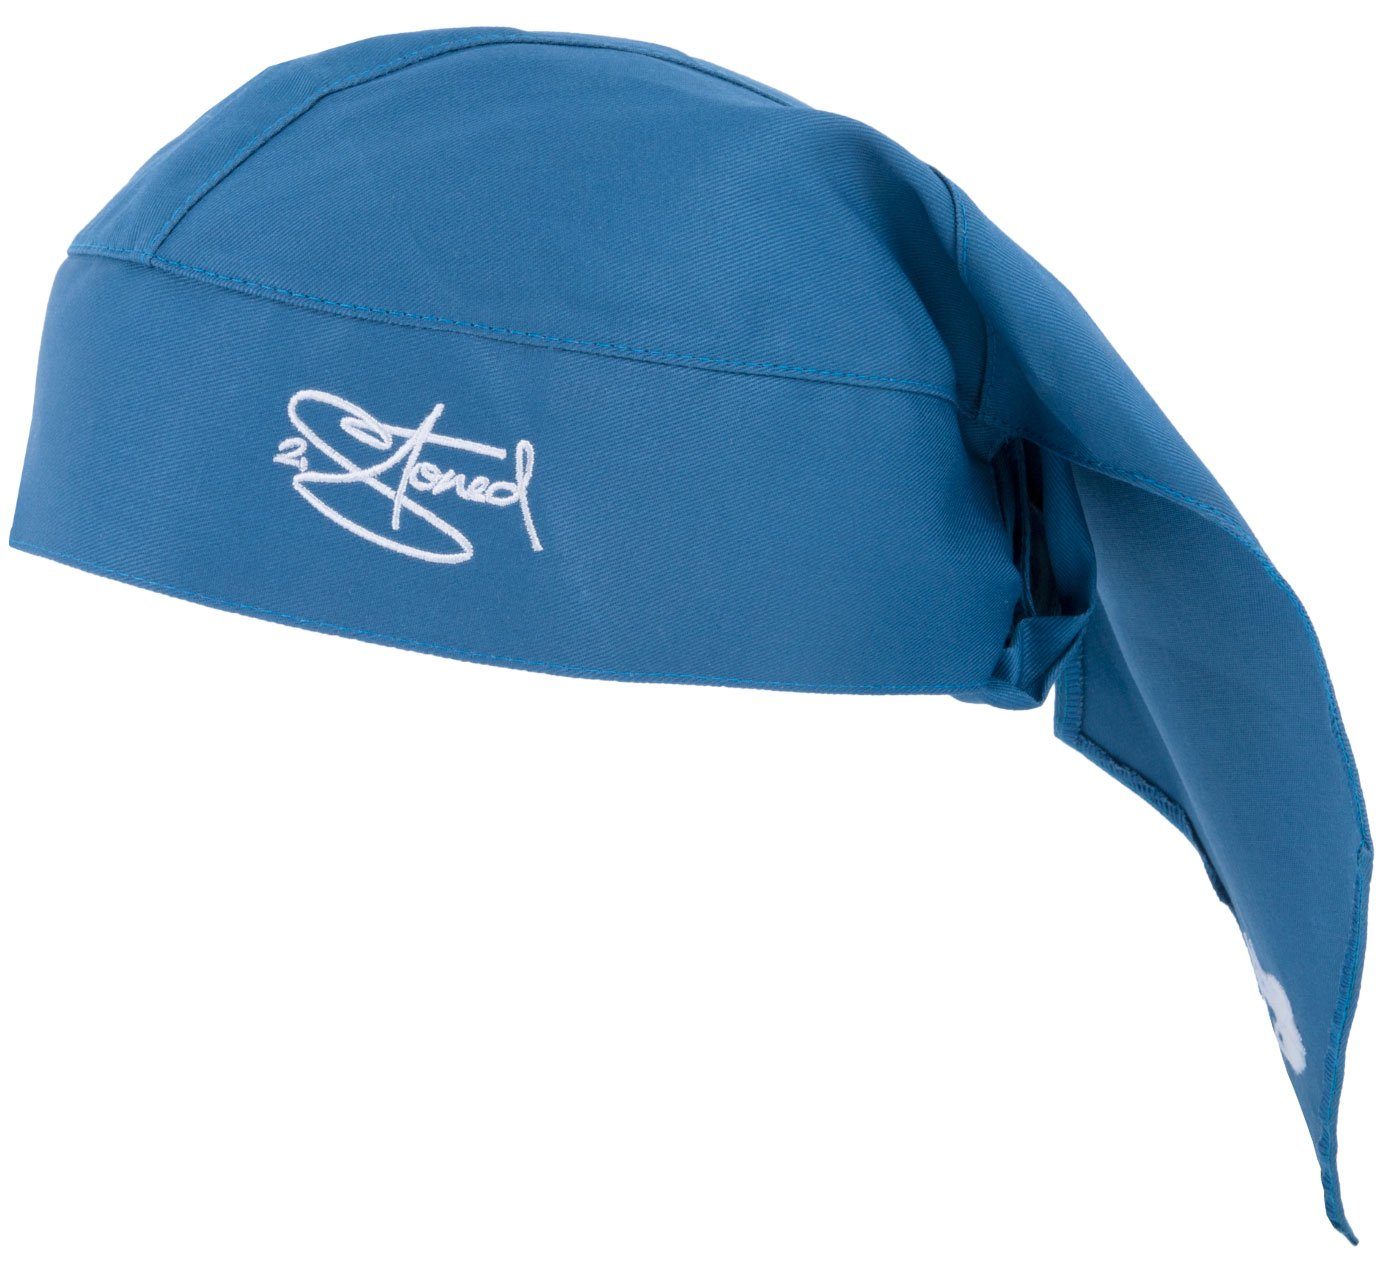 2Stoned Bandana Kopftuch Biker Cap Classic bestickt für Damen, Herren und Kinder, Einheitsgröße Steel Blue | Bandanas